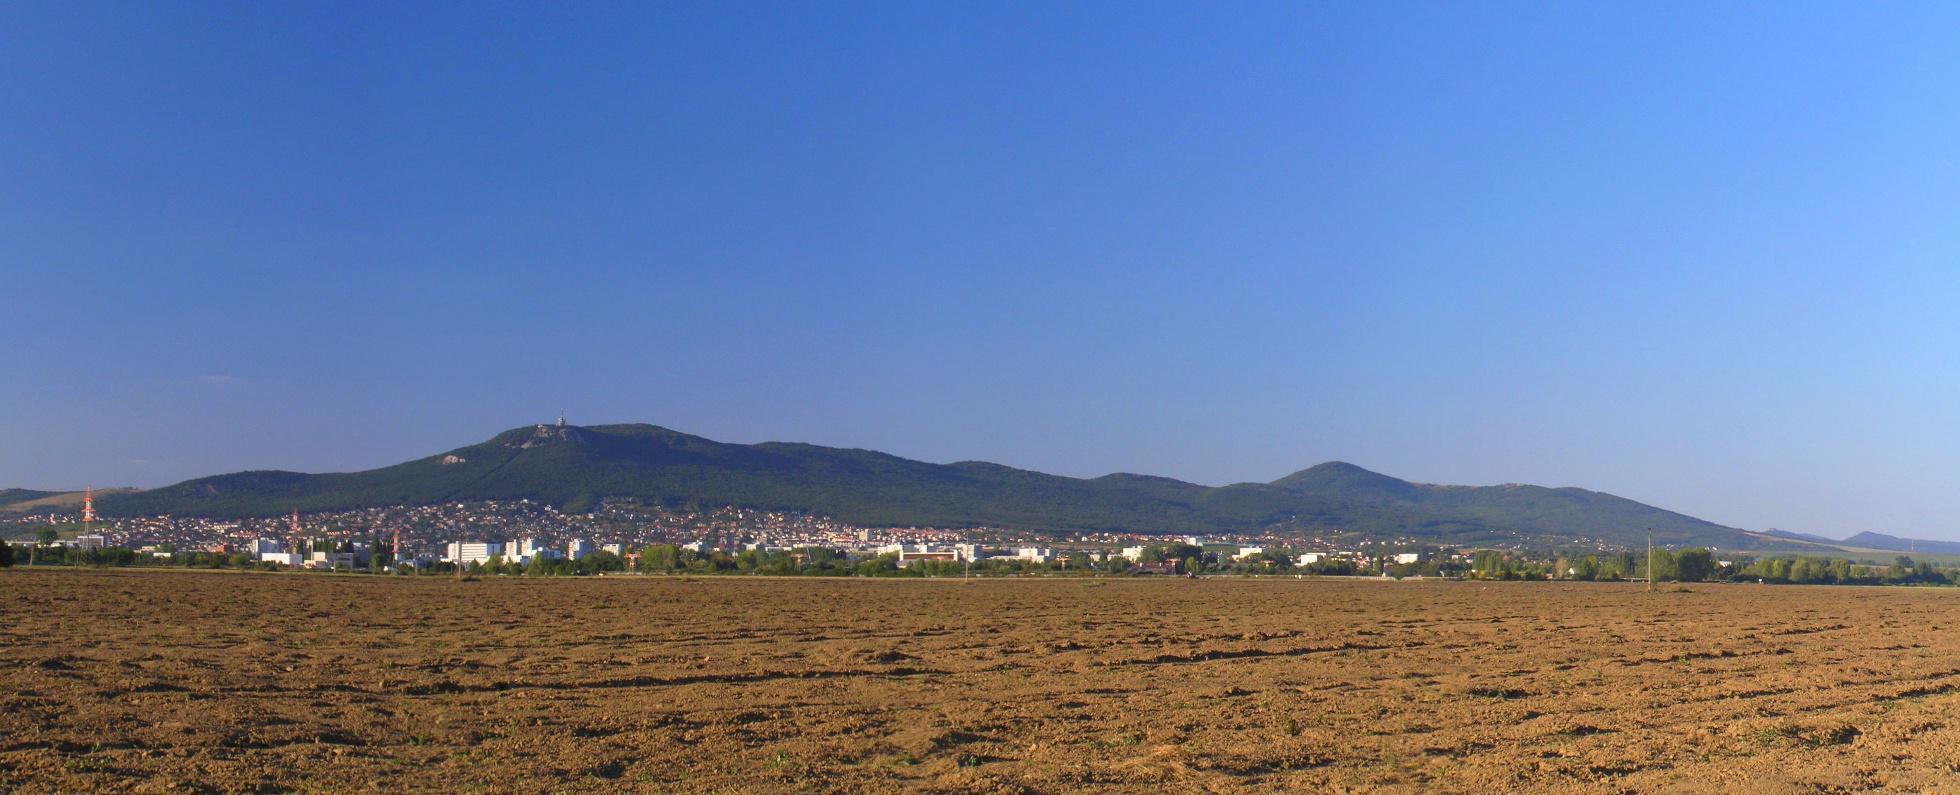 Nitra s panorámou Zobora a Žibrice z roku 2006 ešte bez rýchlostnej cesty PR1BINA